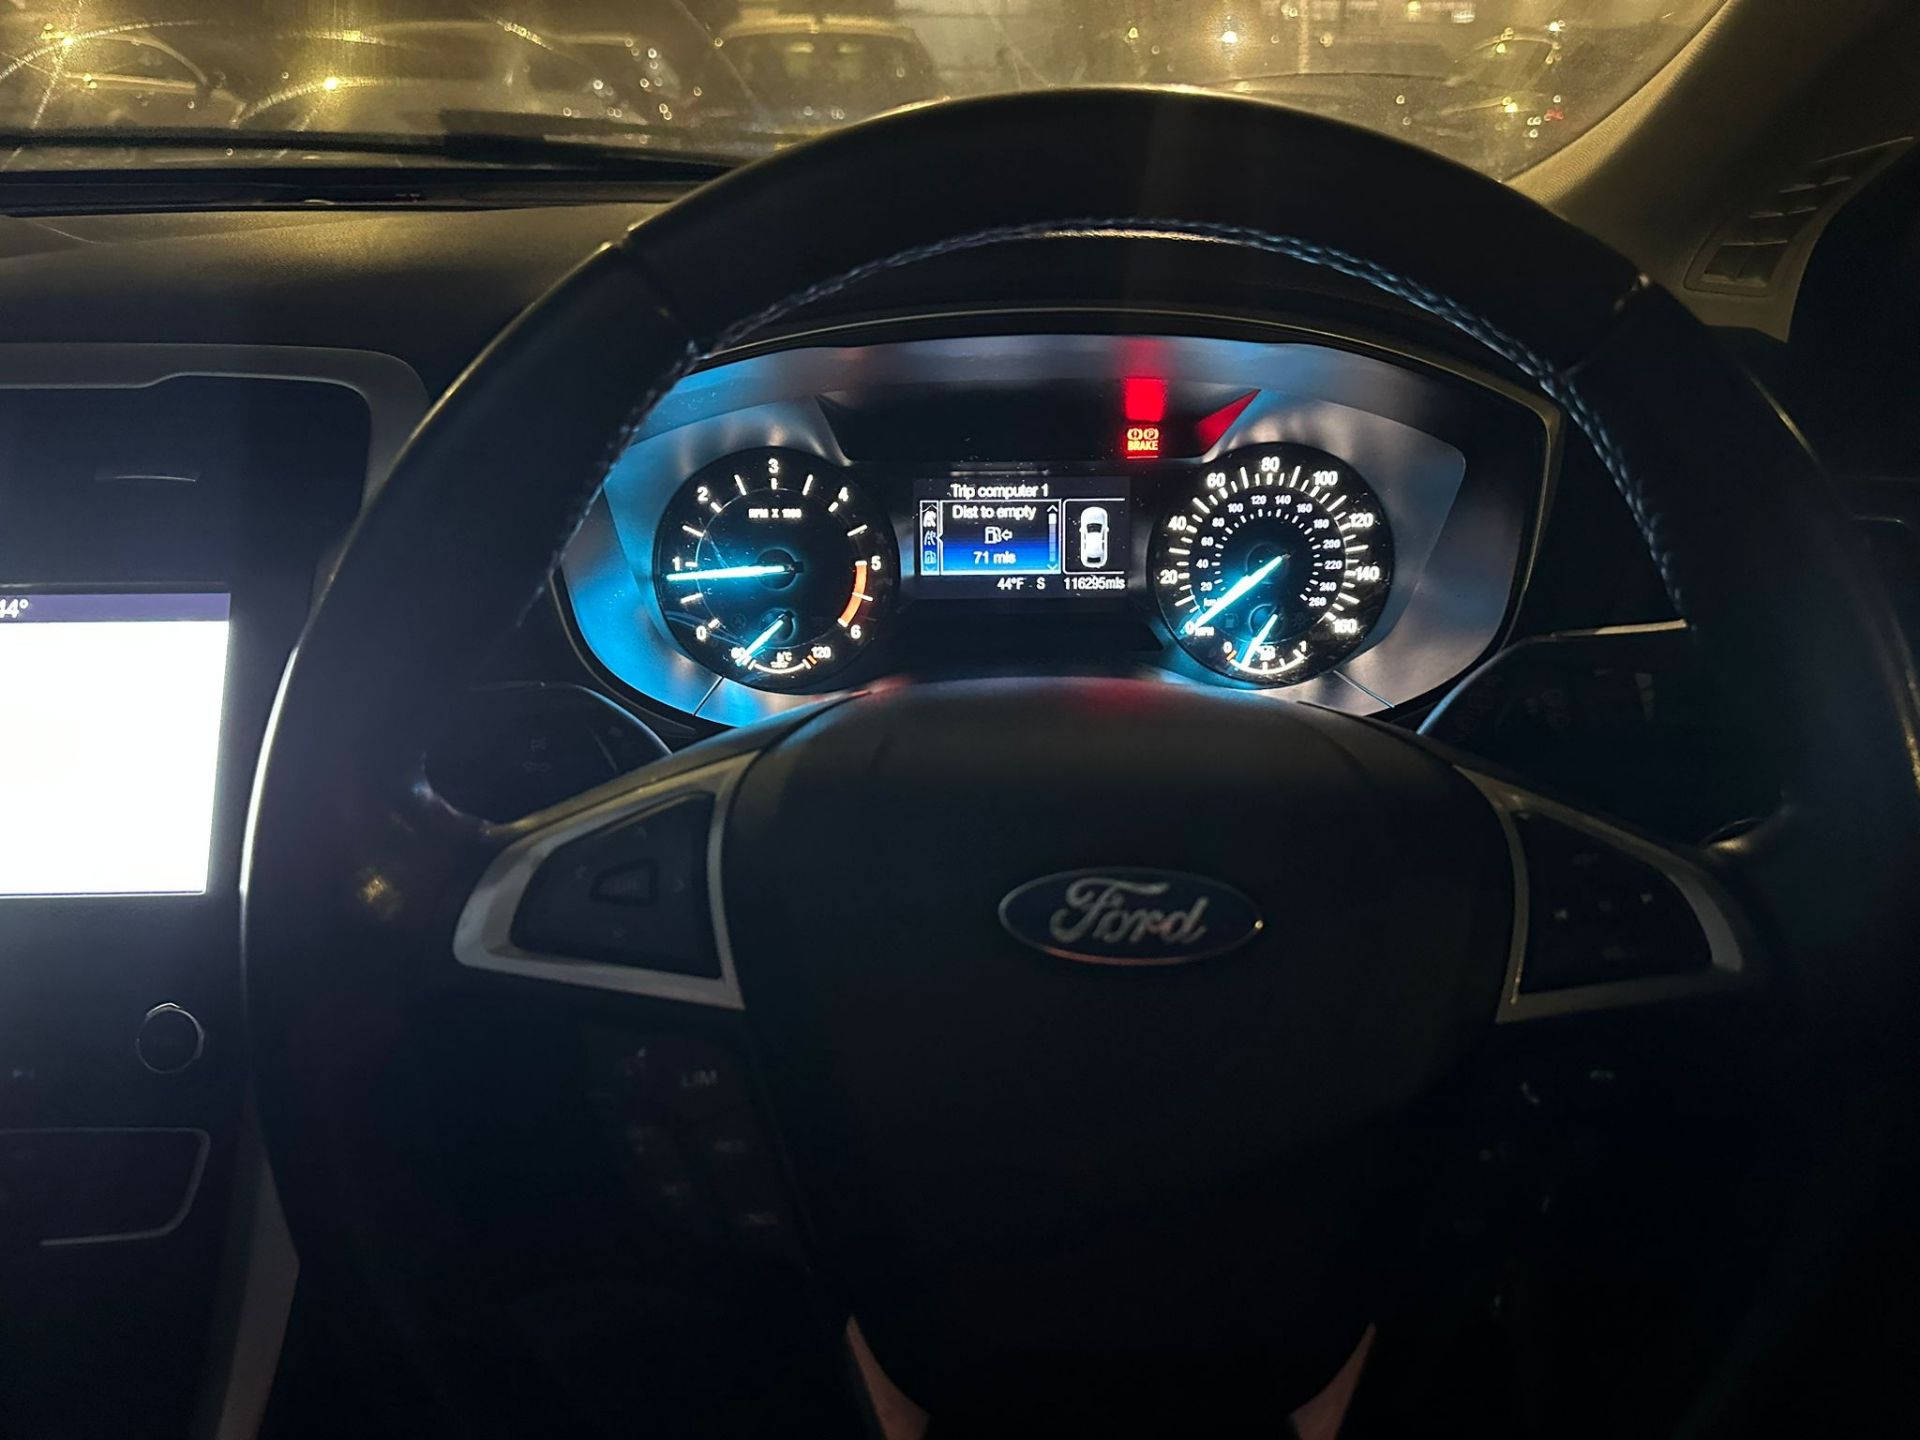 2017 Ford Mondeo Zetec Econetic TDCI (Ex Fleet Vehicle) - Bild 2 aus 12